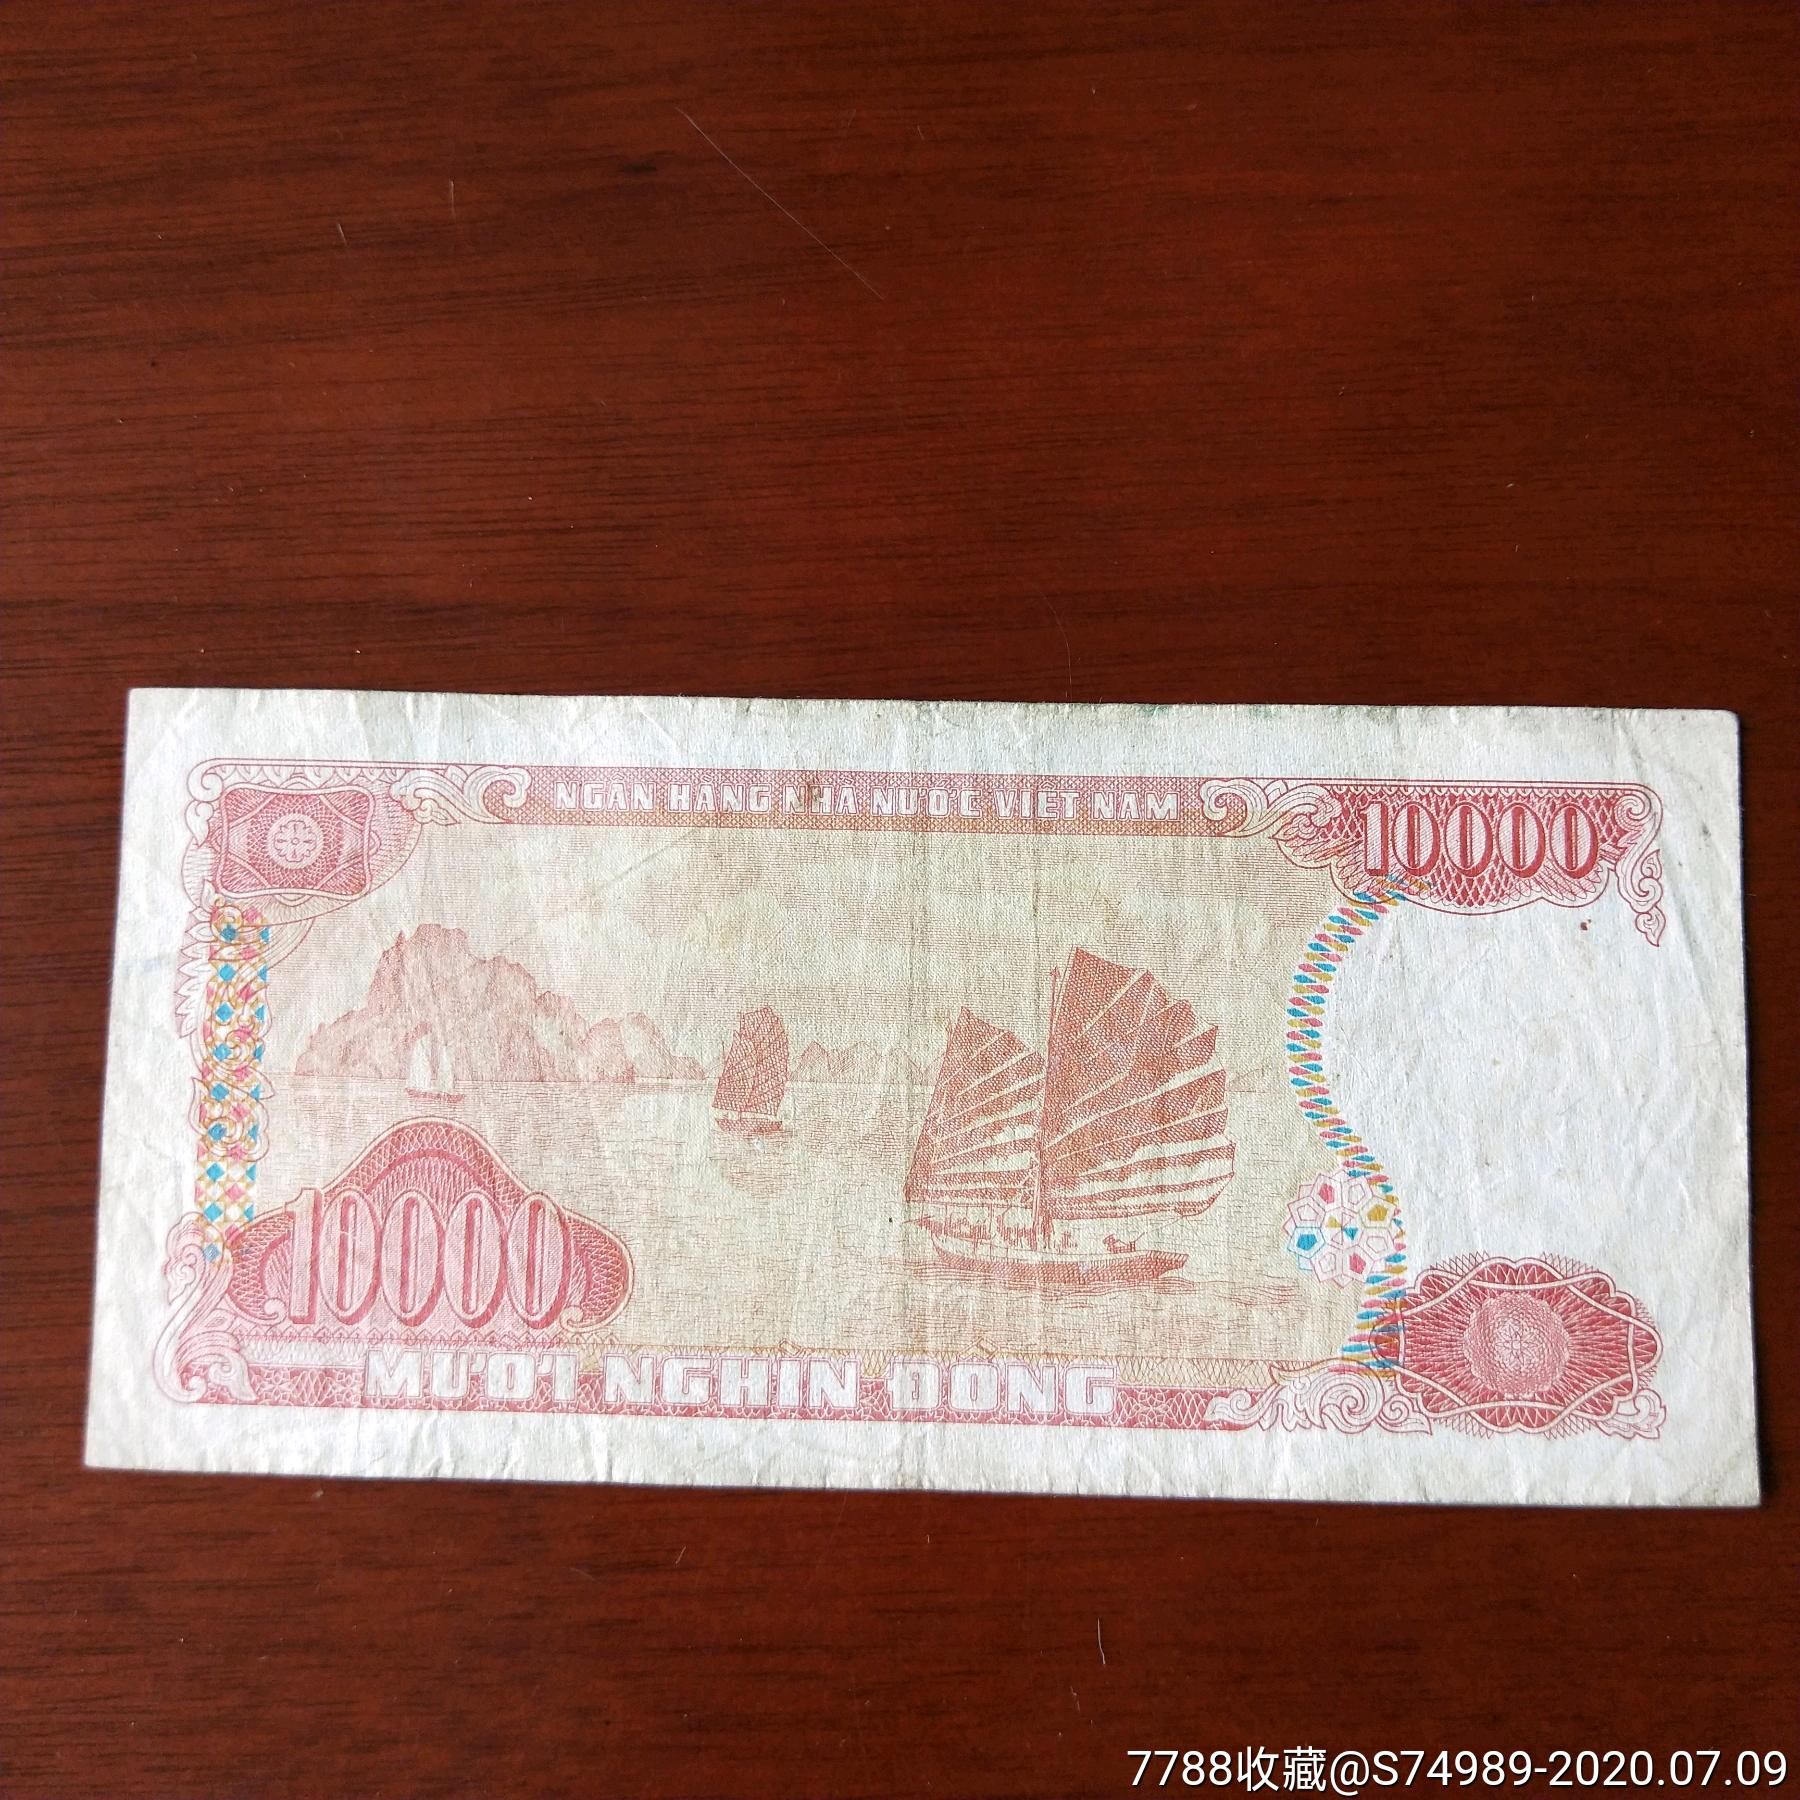 越南纸币越南盾10000盾